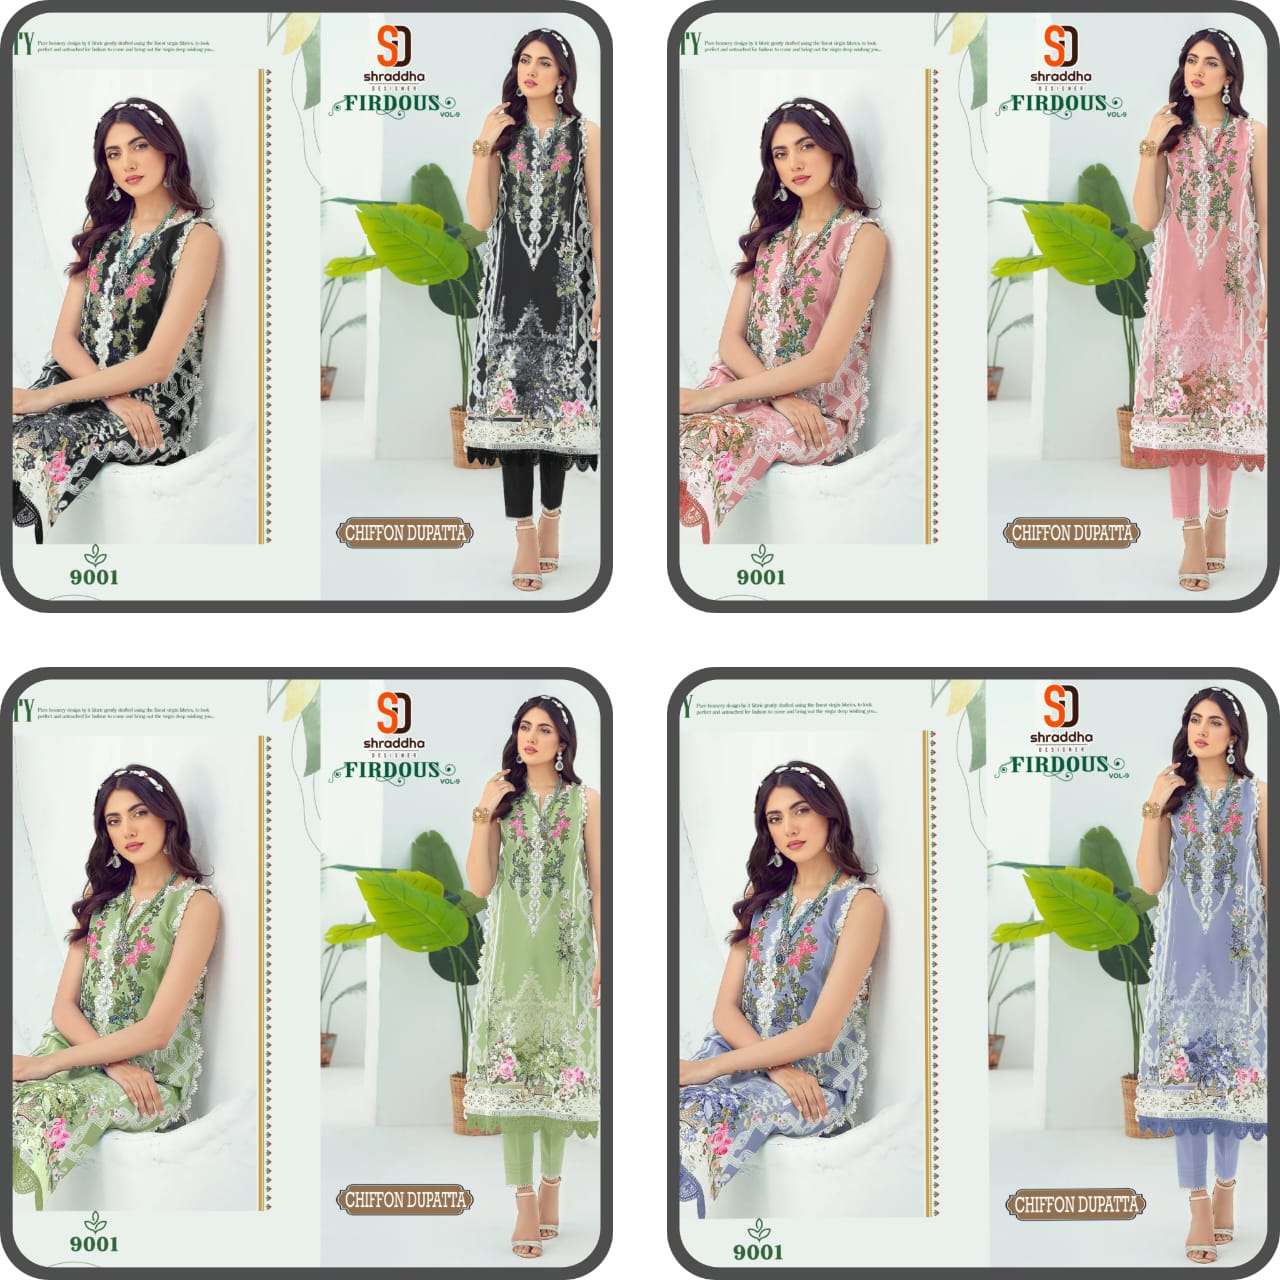 shraddha designer firdous vol-9 special colour edition lawn cotton designer pakistani salwar suits surat 